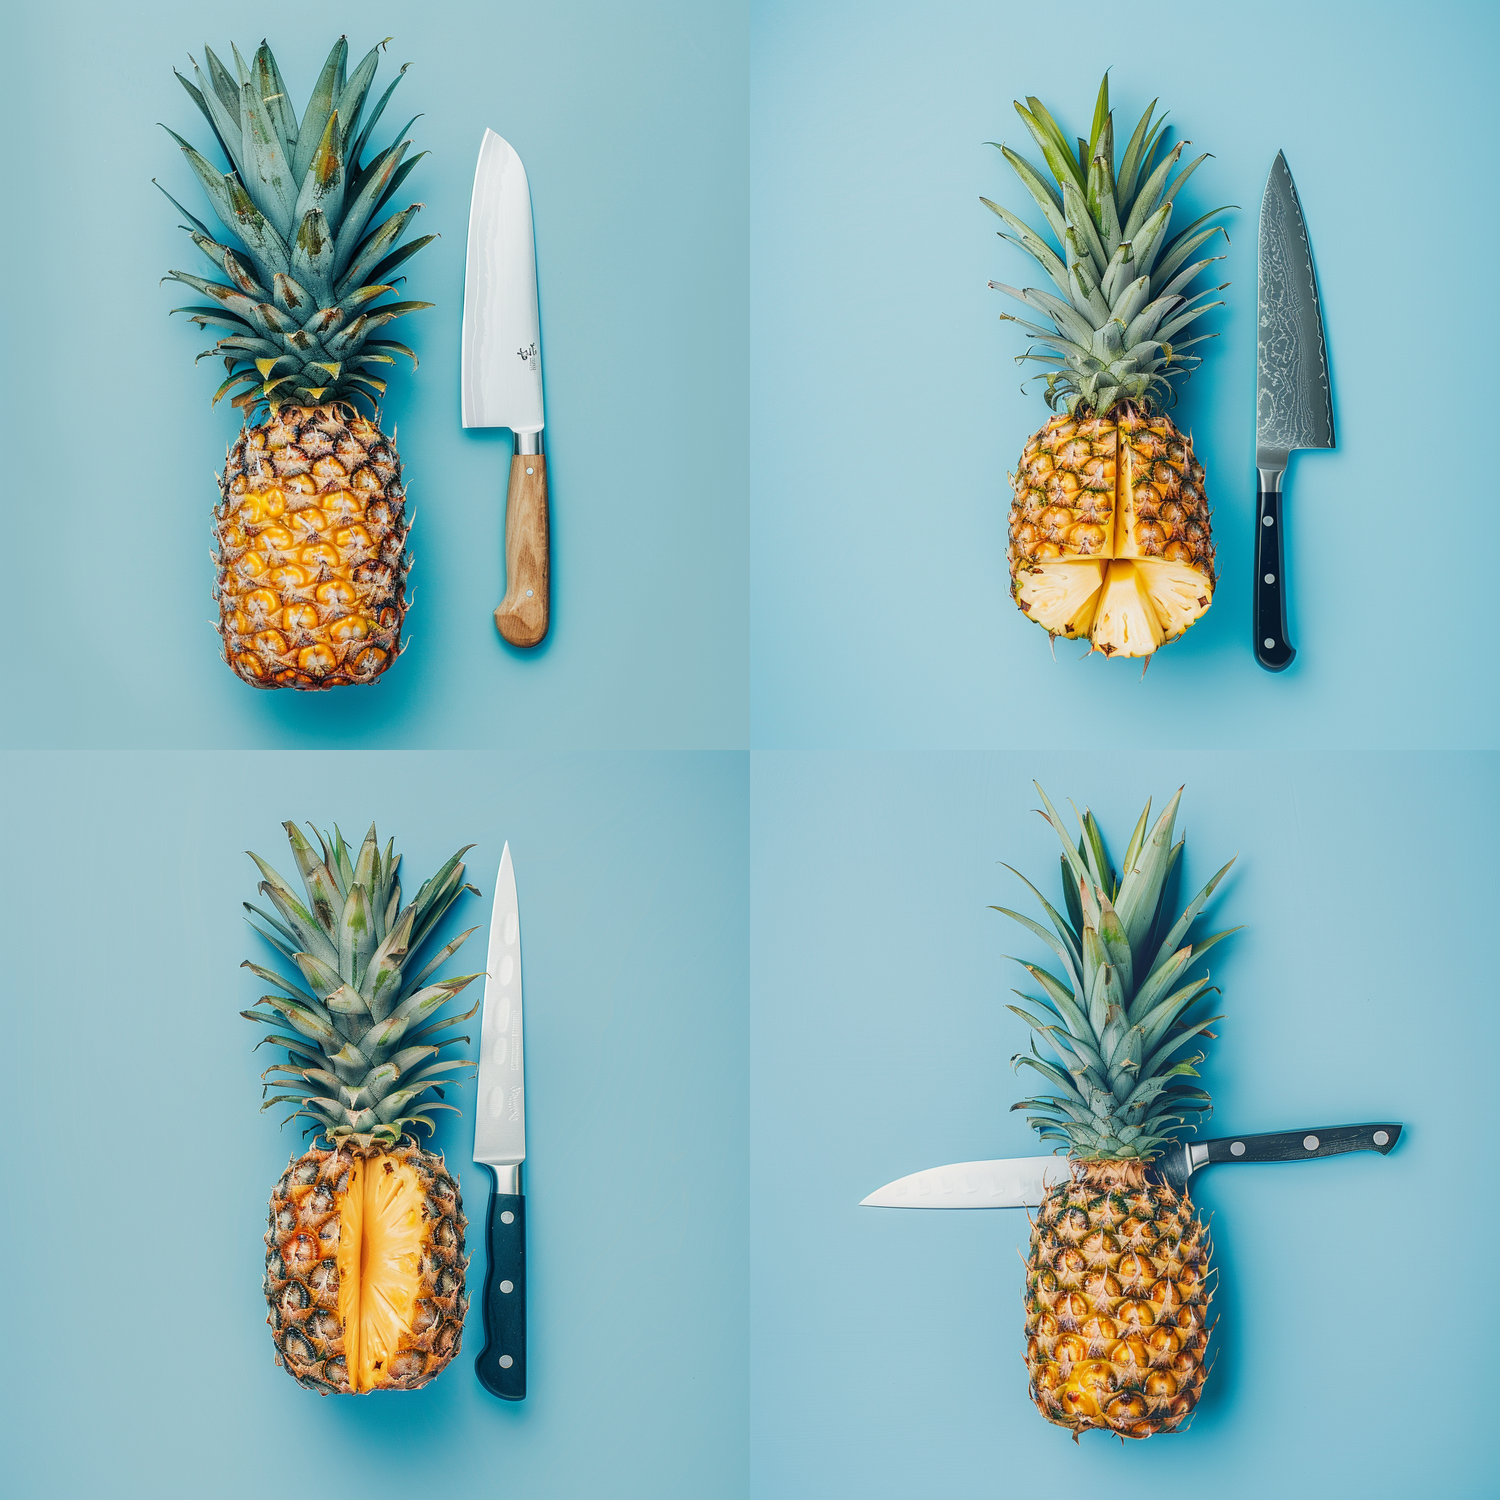 Ananas ist eine Kernzutat unserer Wellness Shots für eine Apfelessig Diät.